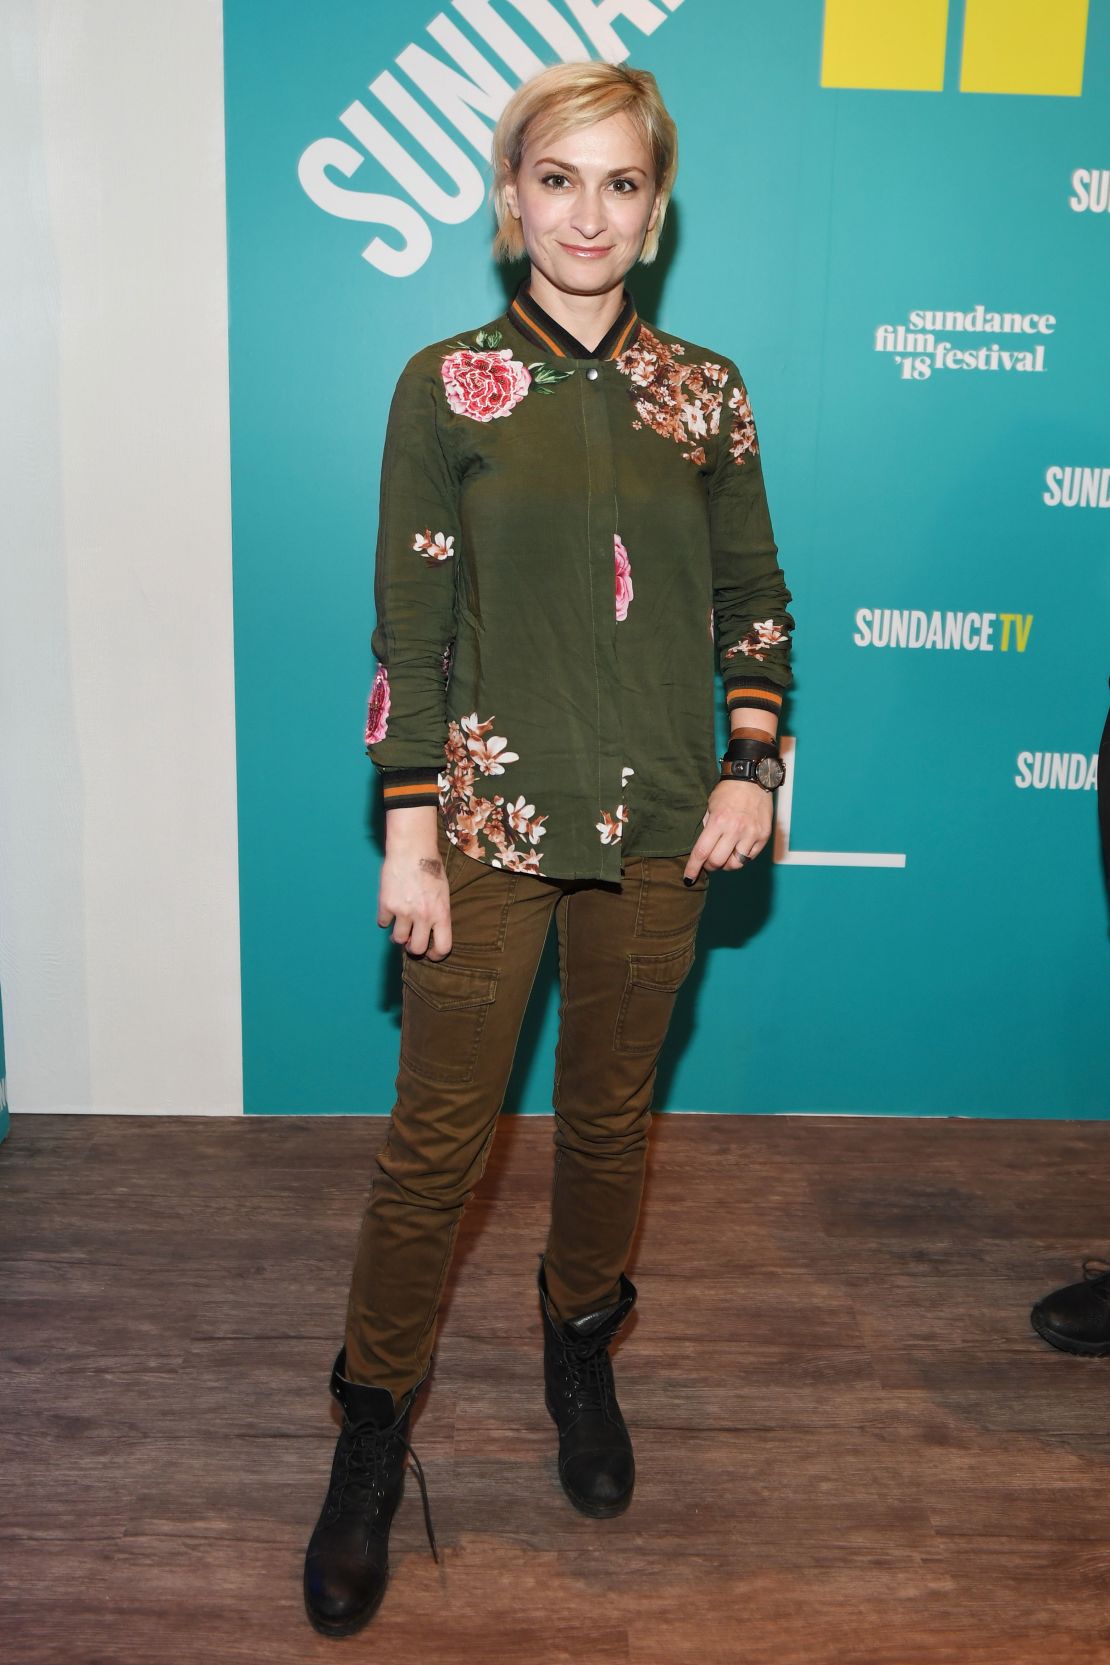 Filmmaker Halyna at the Sundance Film Festival in 2018